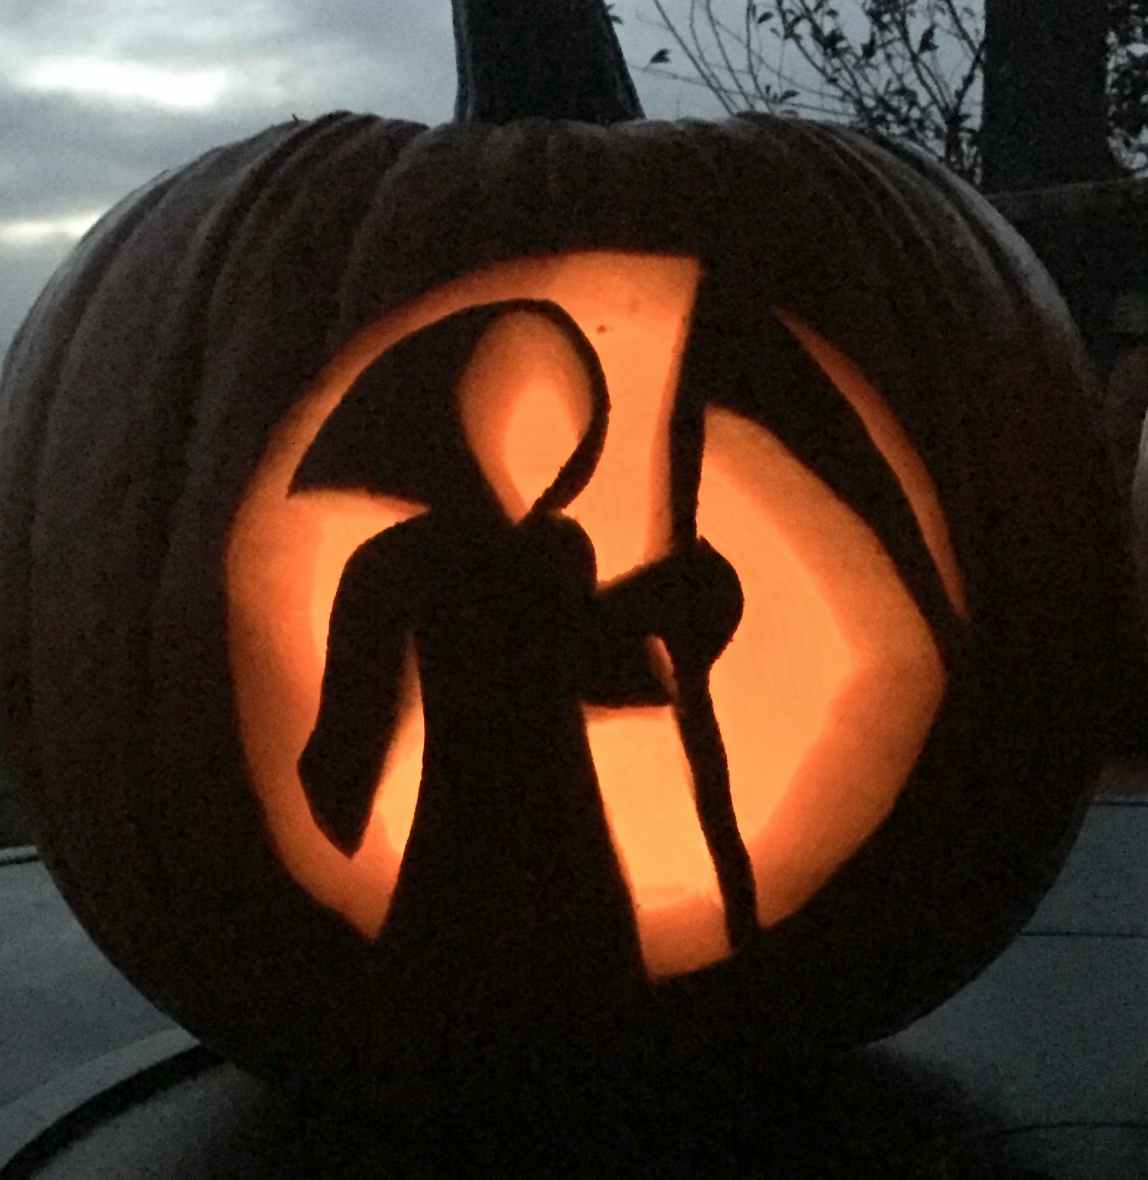 A grim reaper carved in a pumpkin.